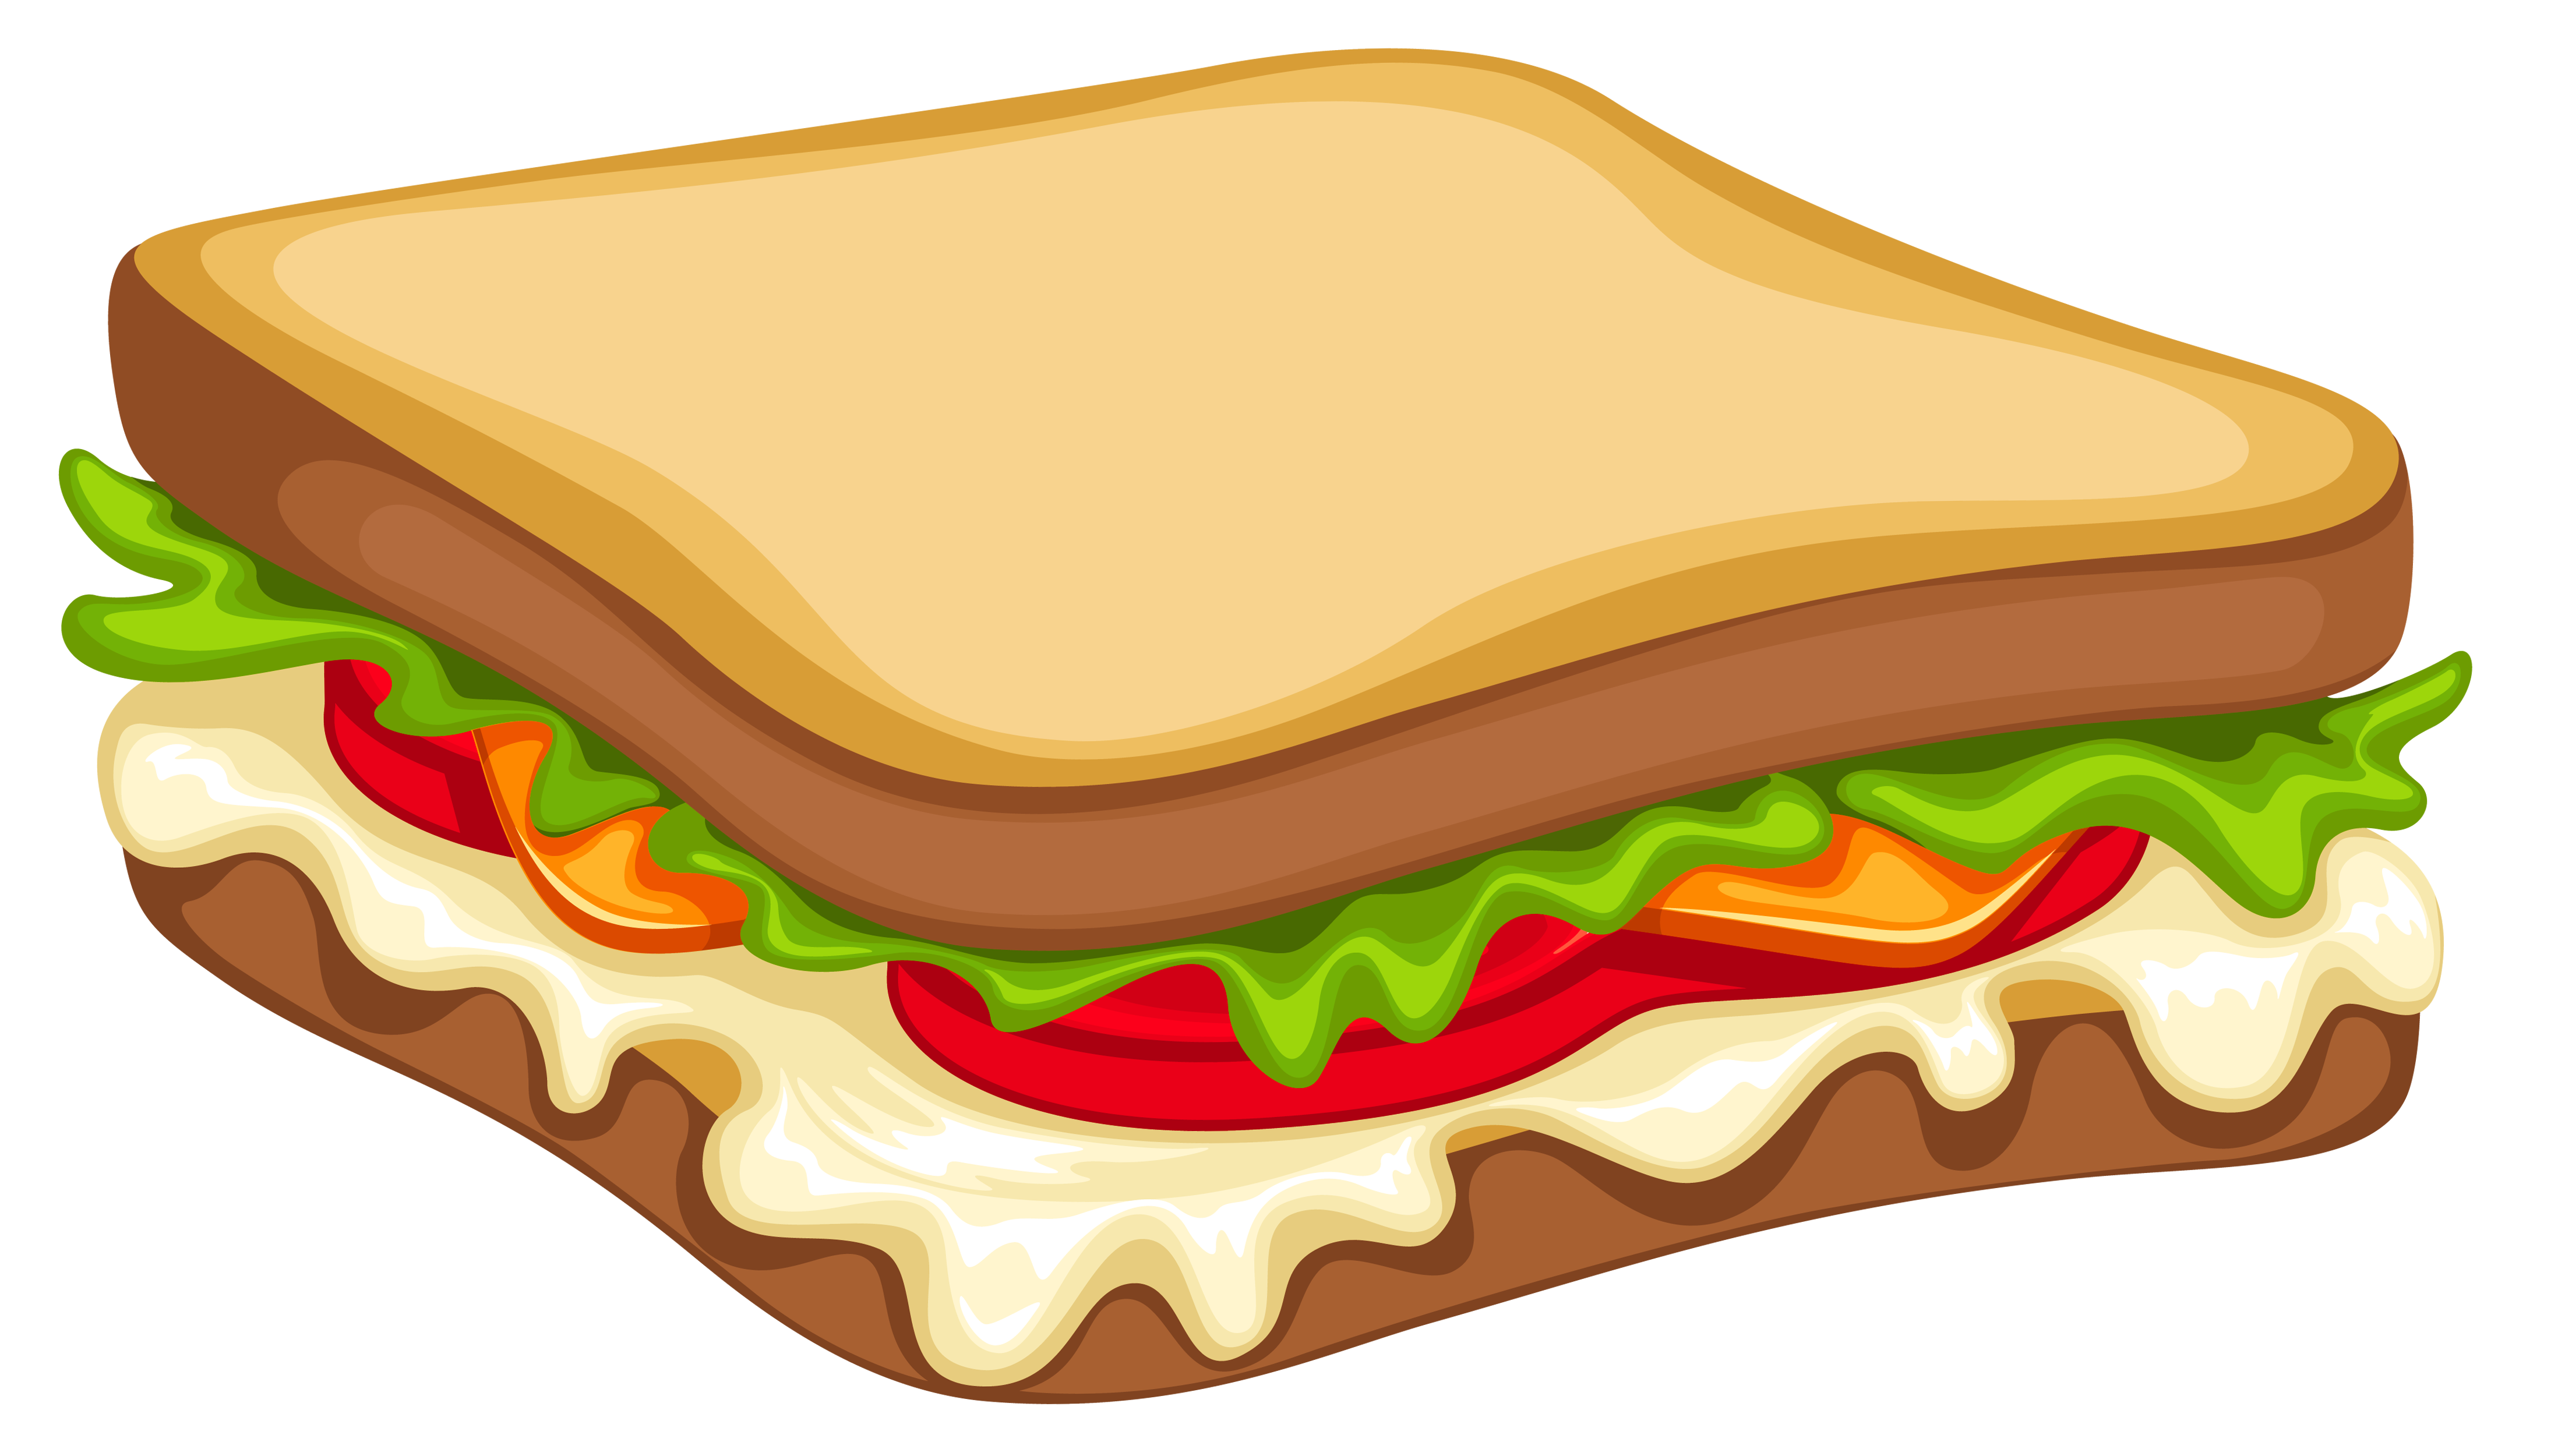 Lettuce clipart flat. Sandwich png vector image